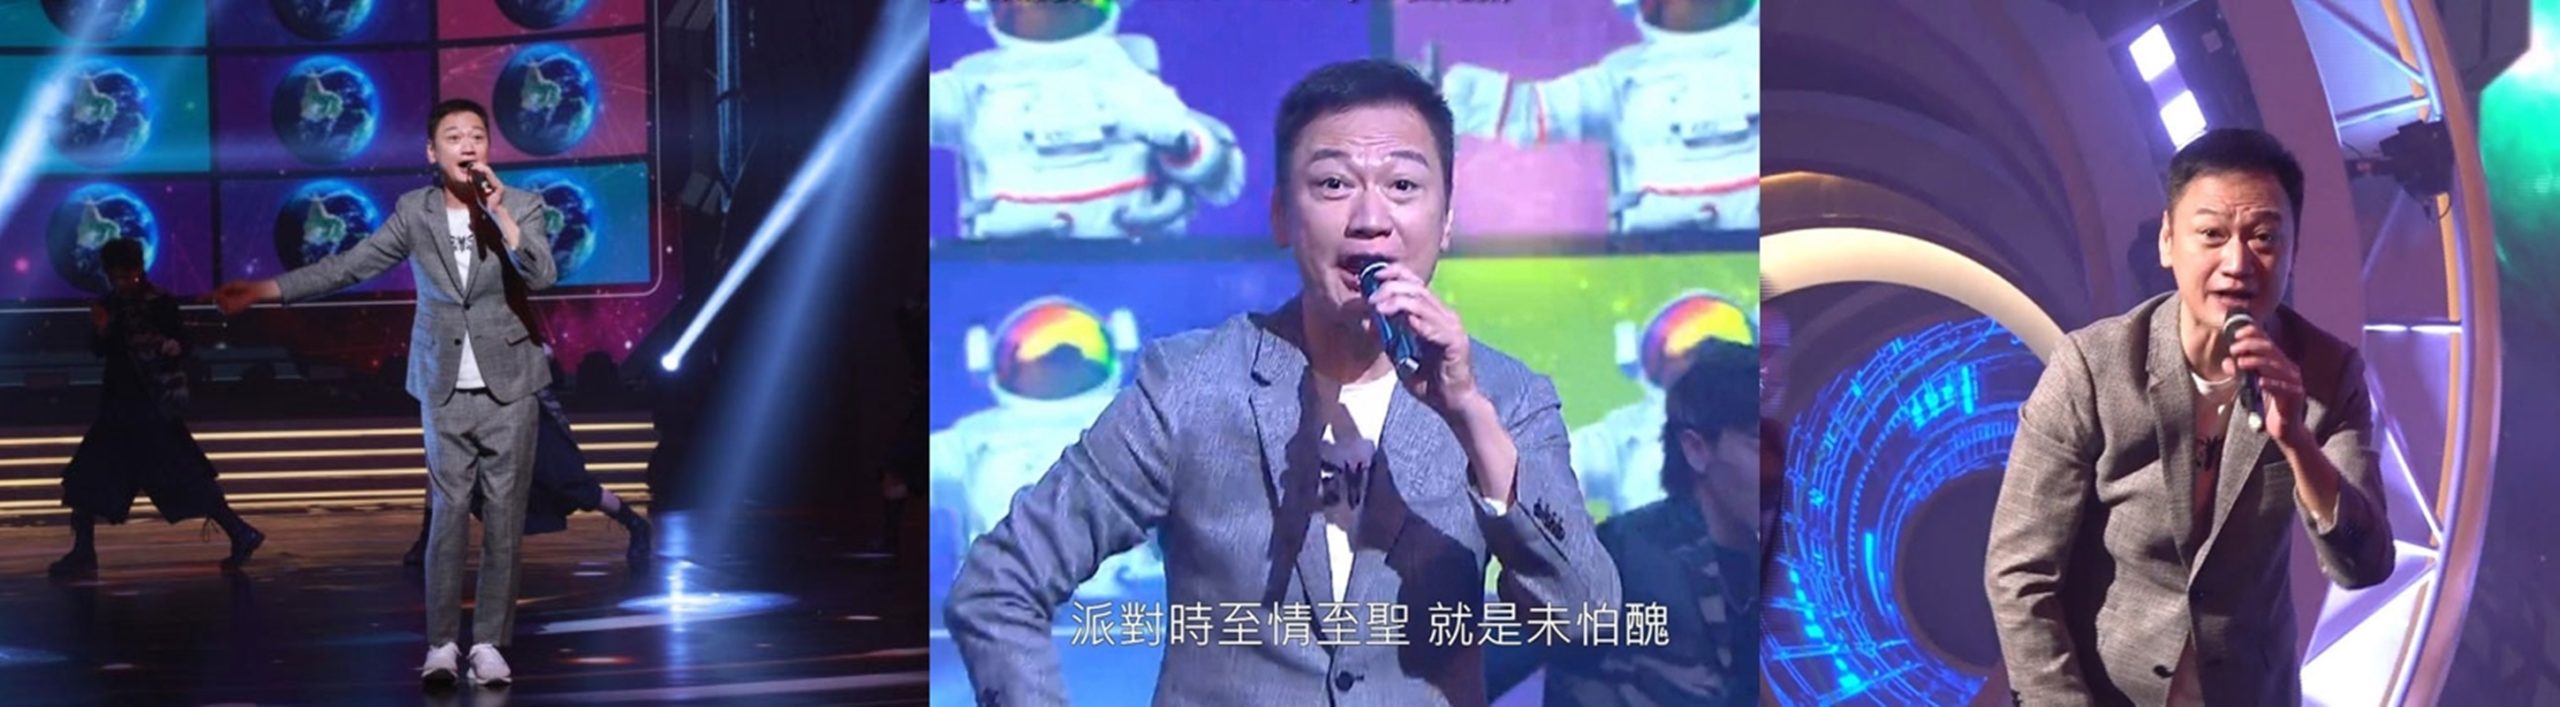 近年憑唱《倒轉地球》在中國走紅